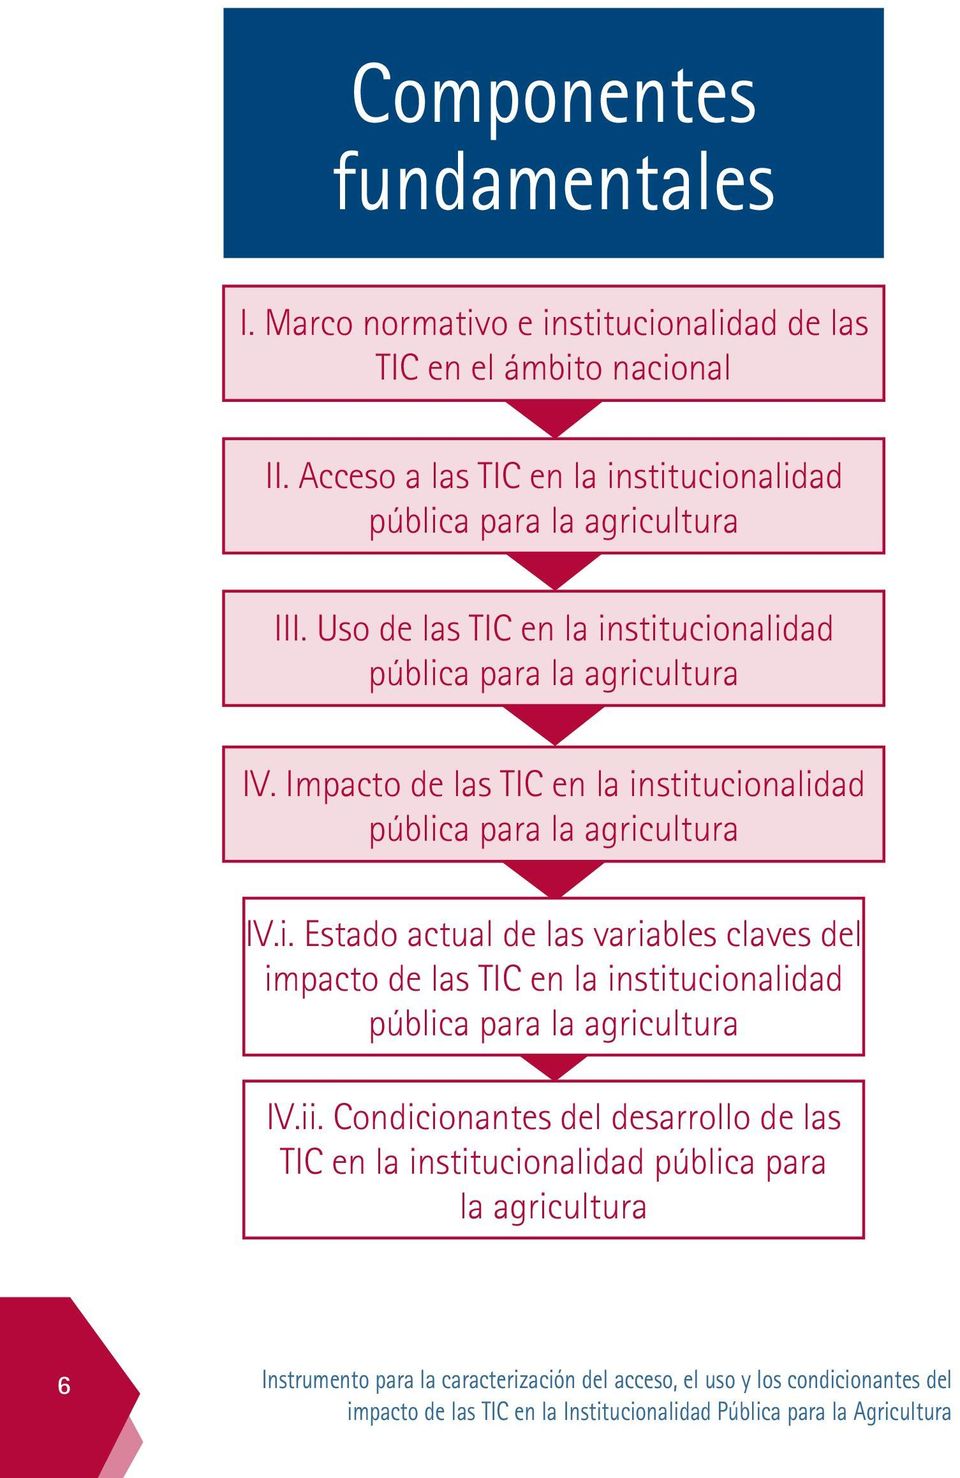 Impacto de las tic en la institucionalidad pública para la agricultura Iv.i. Estado actual de las variables claves del impacto de las tic en la institucionalidad pública para la agricultura IV.